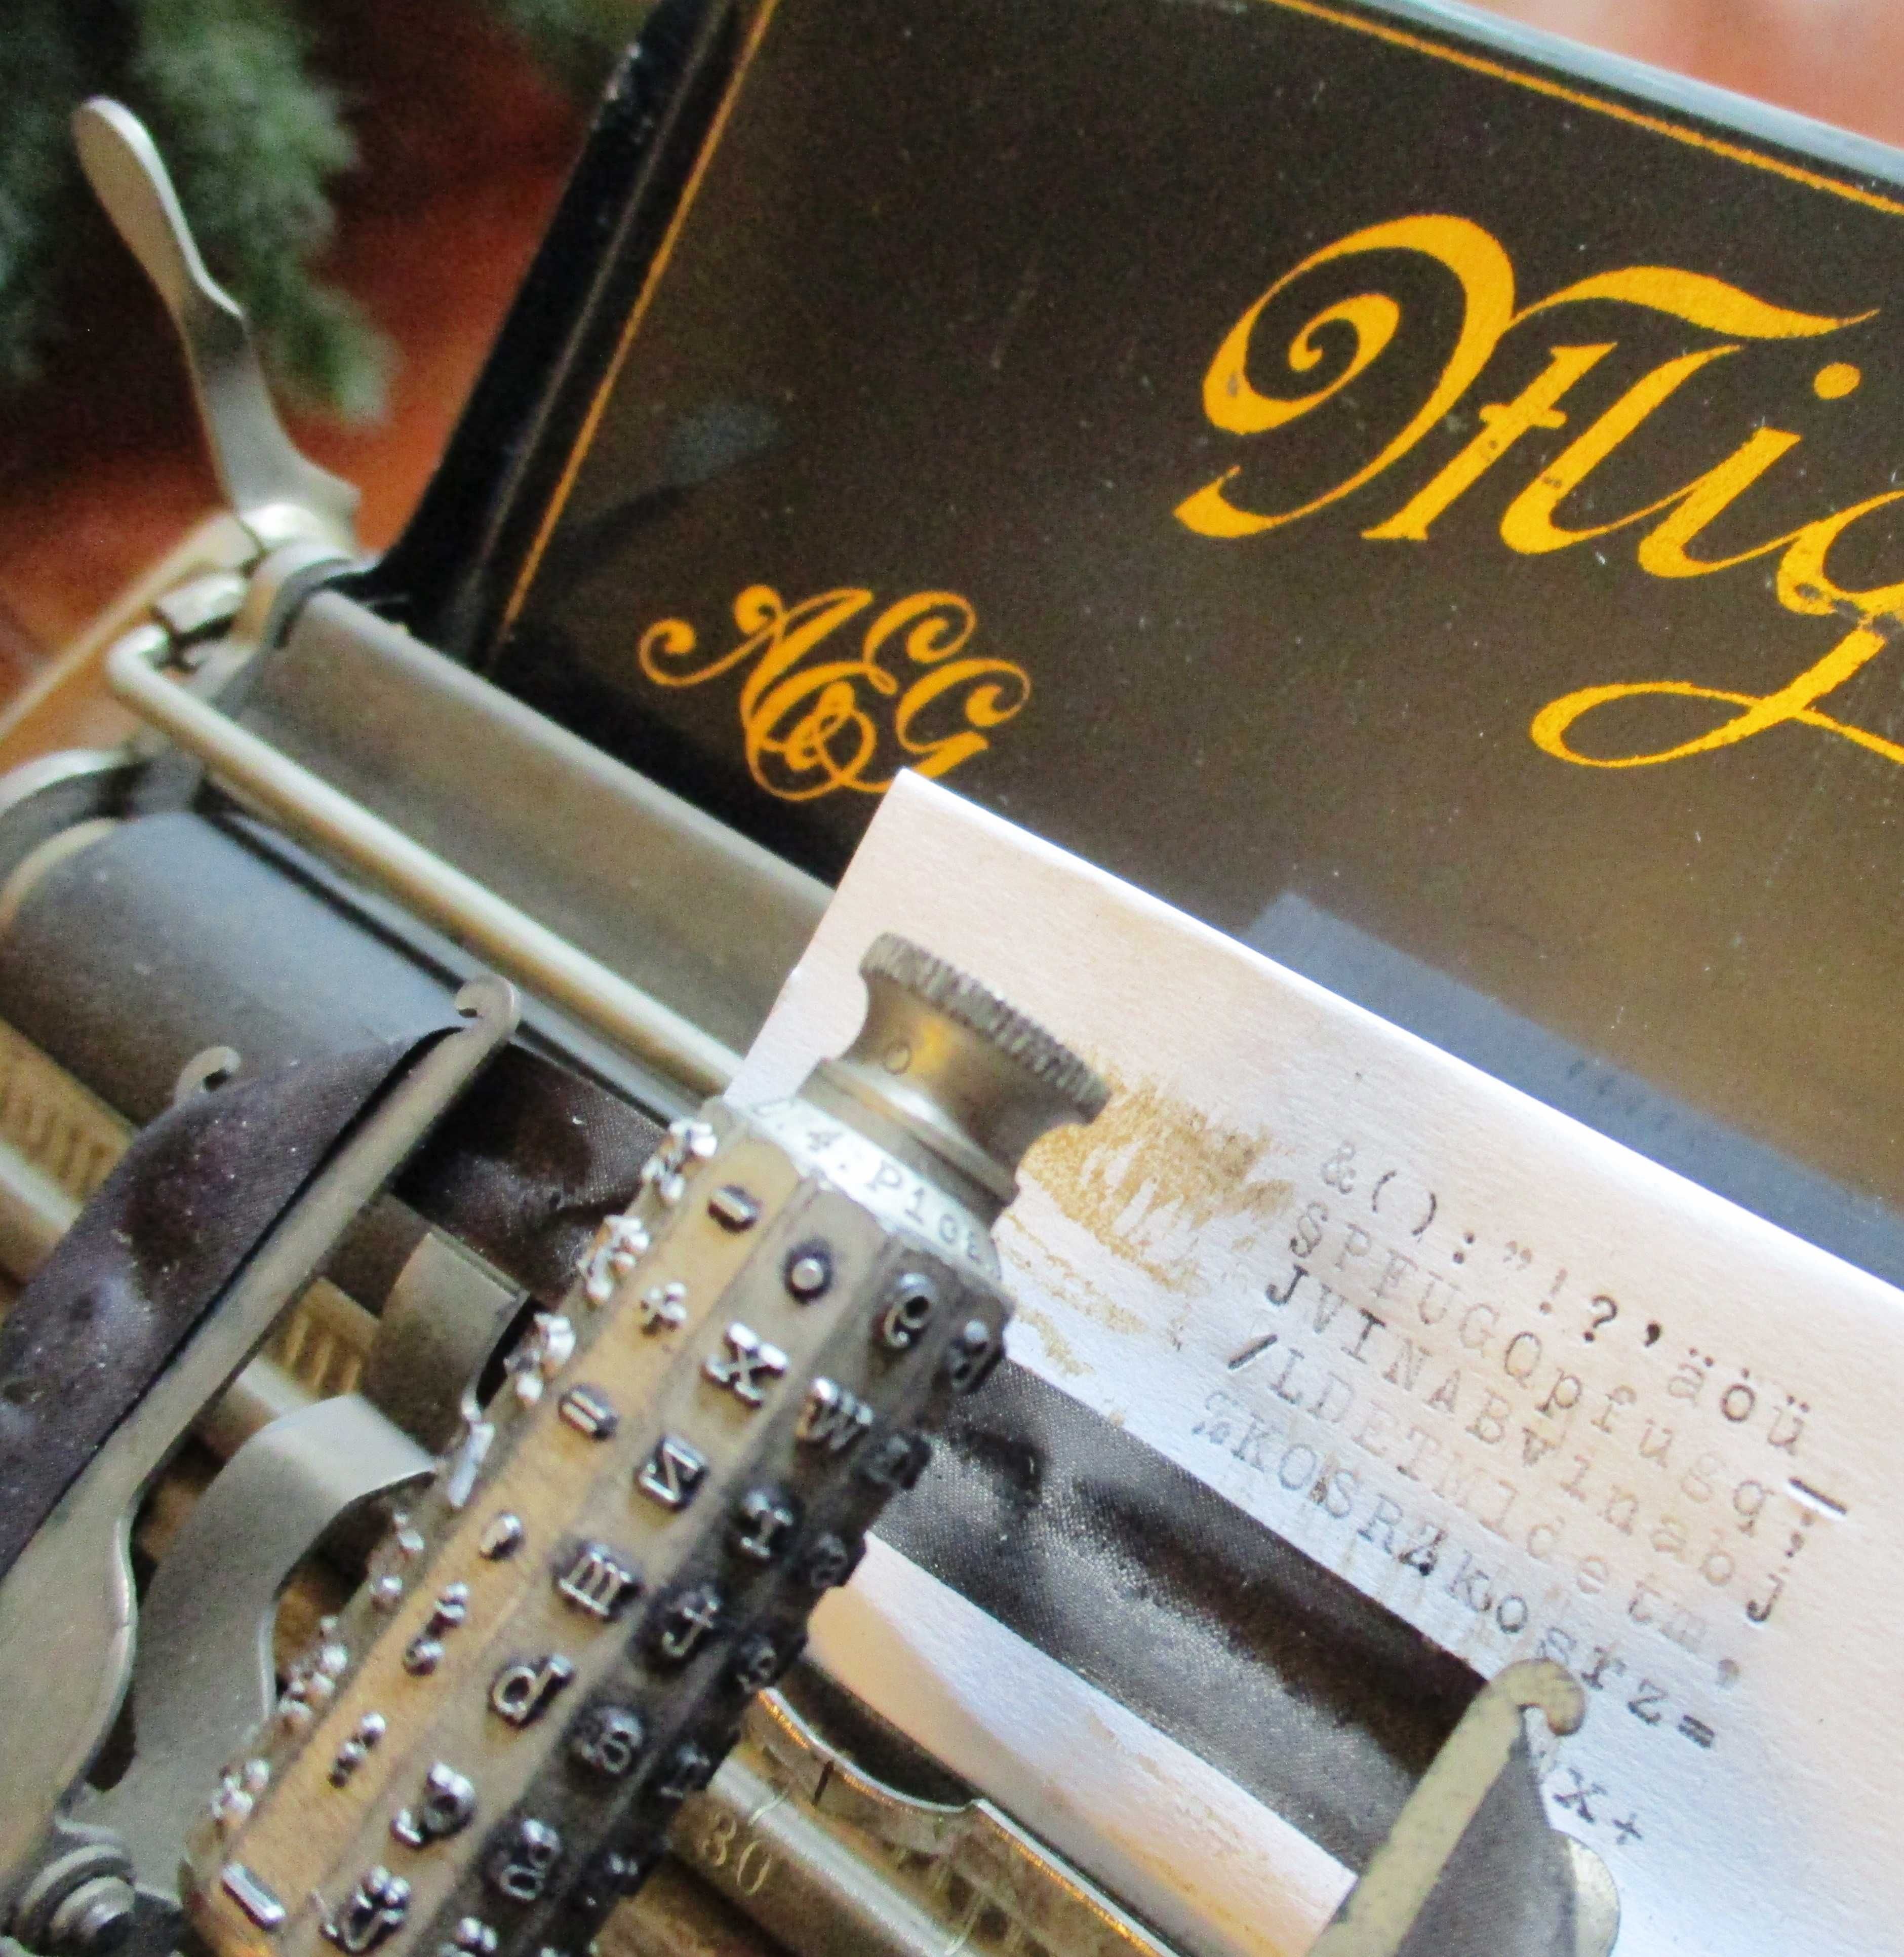 Ano 1903 - Maquina de escrever Mignon 2 com caixa metálica